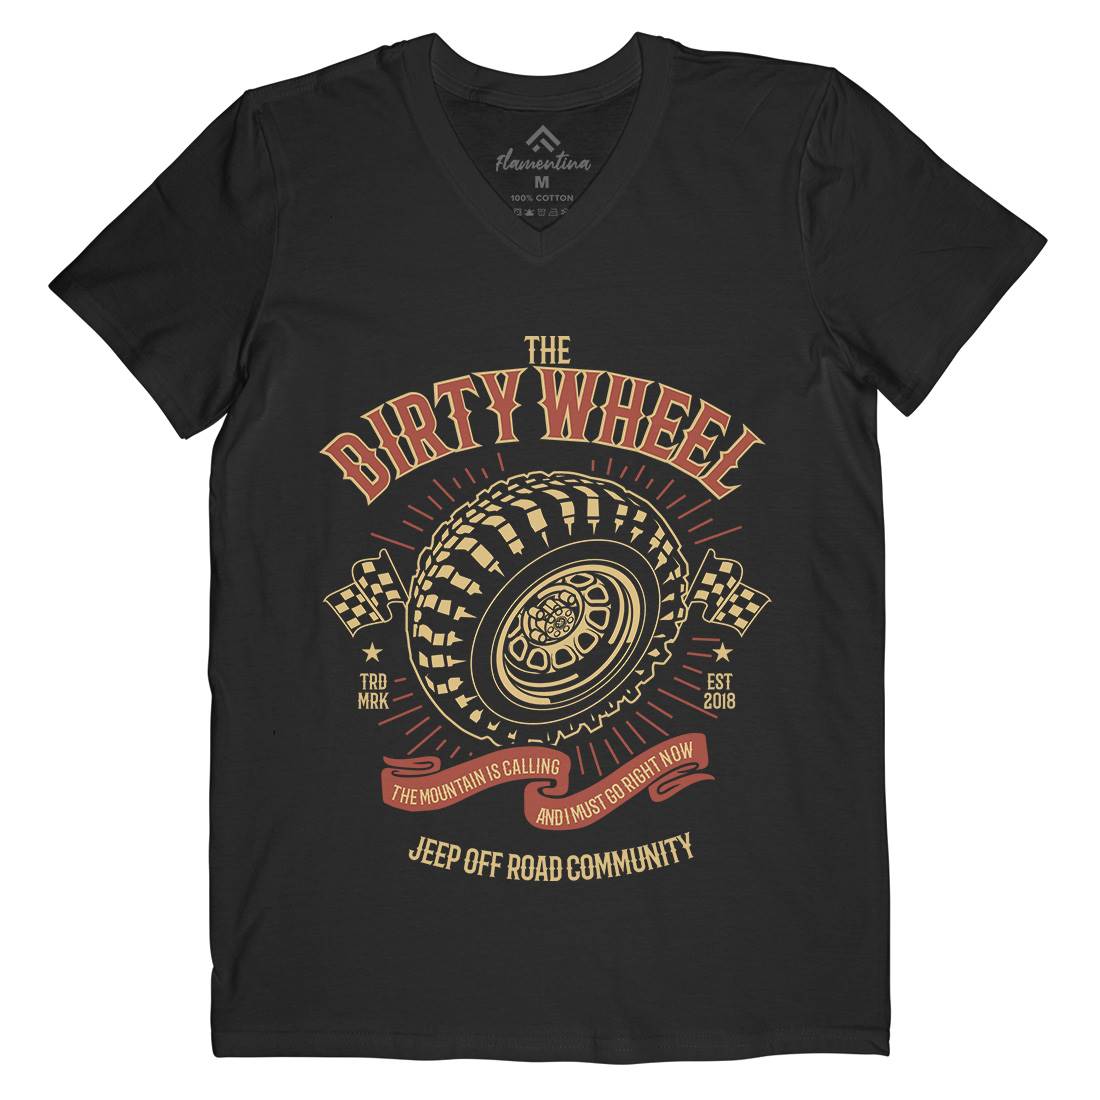 The Dirty Wheel Mens Organic V-Neck T-Shirt Cars B262